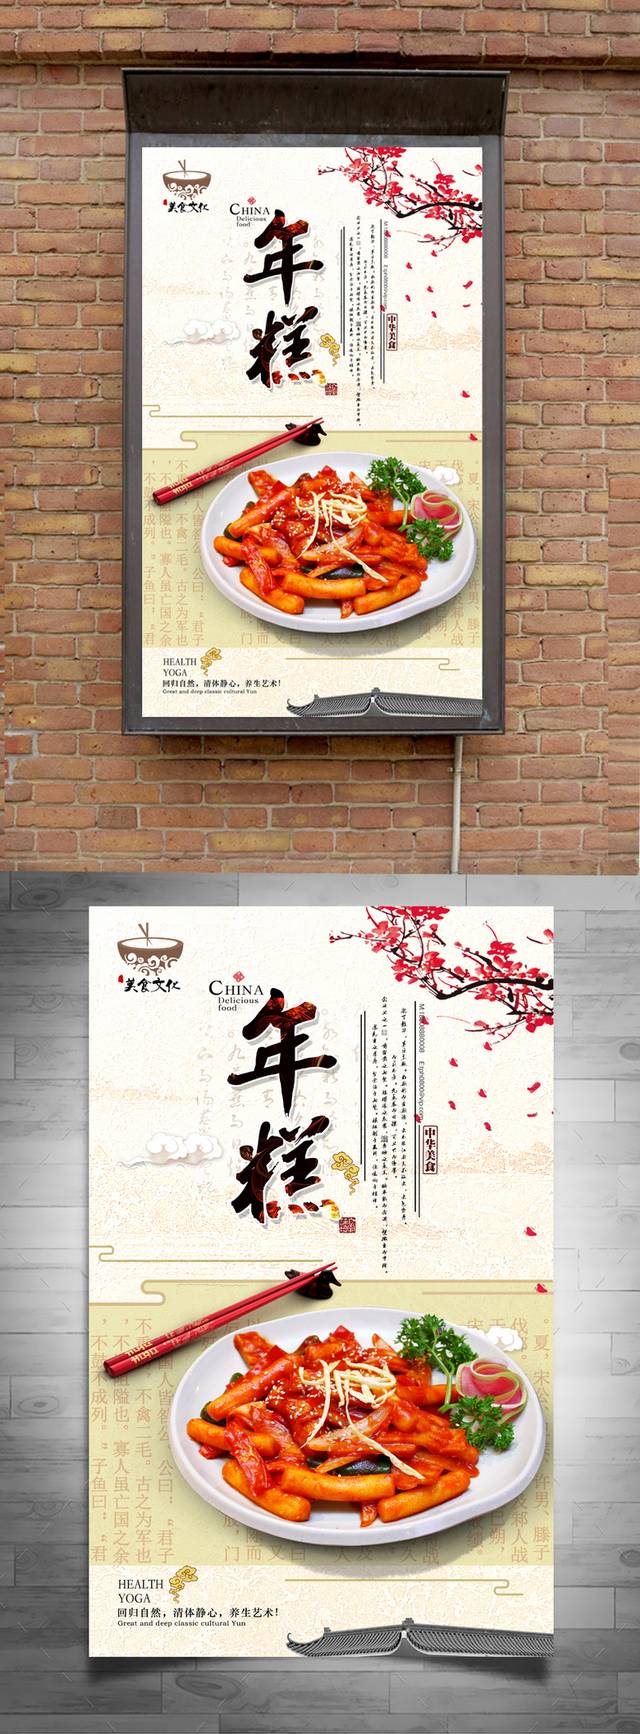 清新经典年糕宣传海报设计